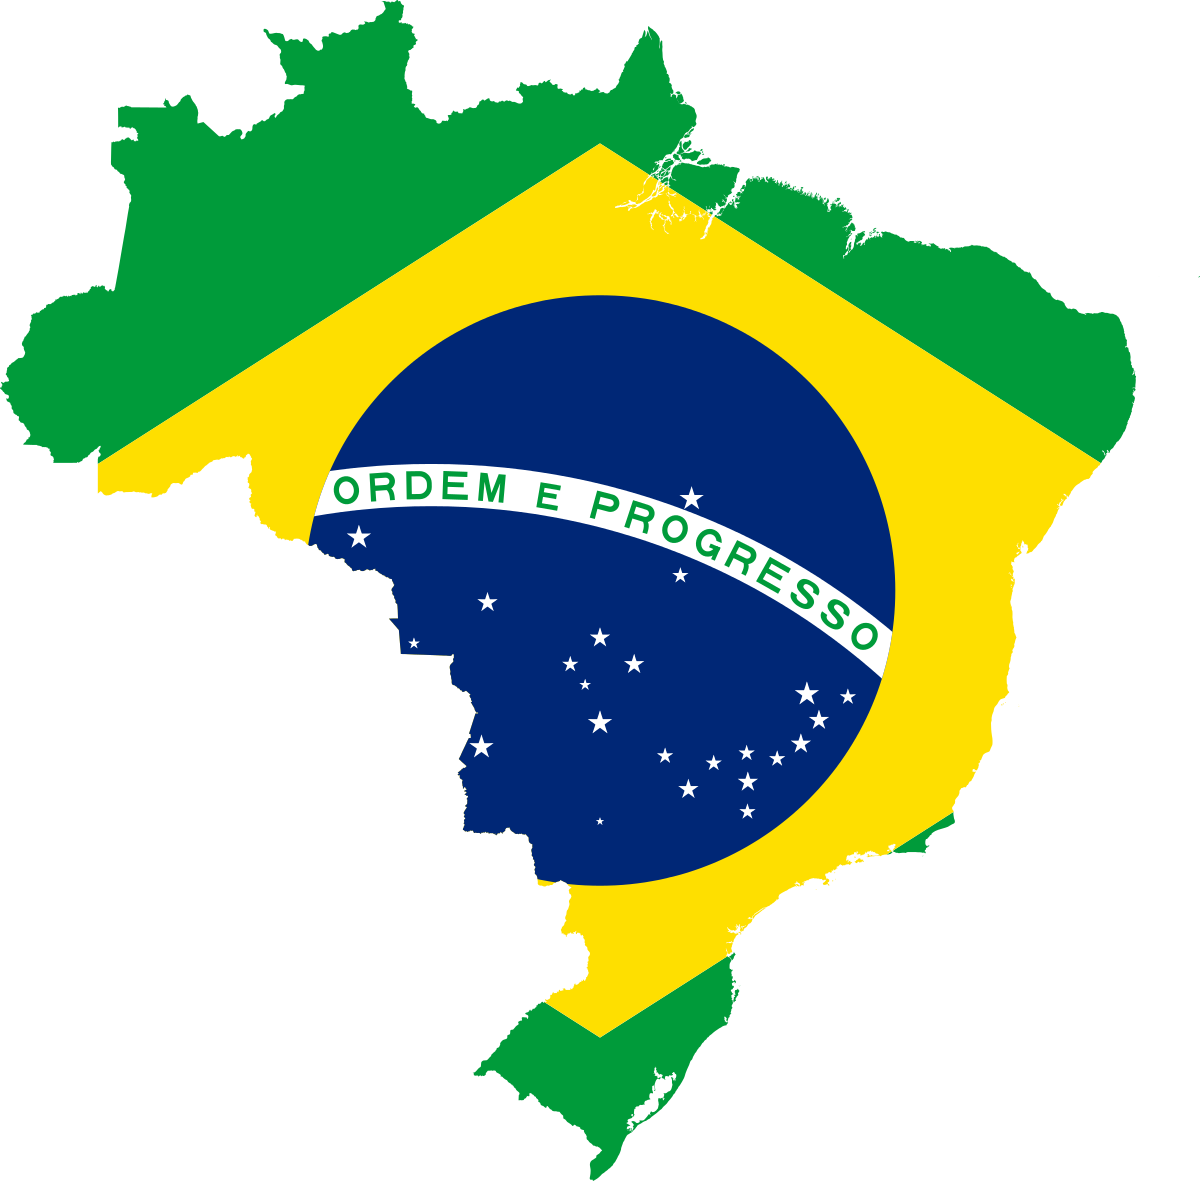 Políticos brasileños rechazan seguir labores en pandemia